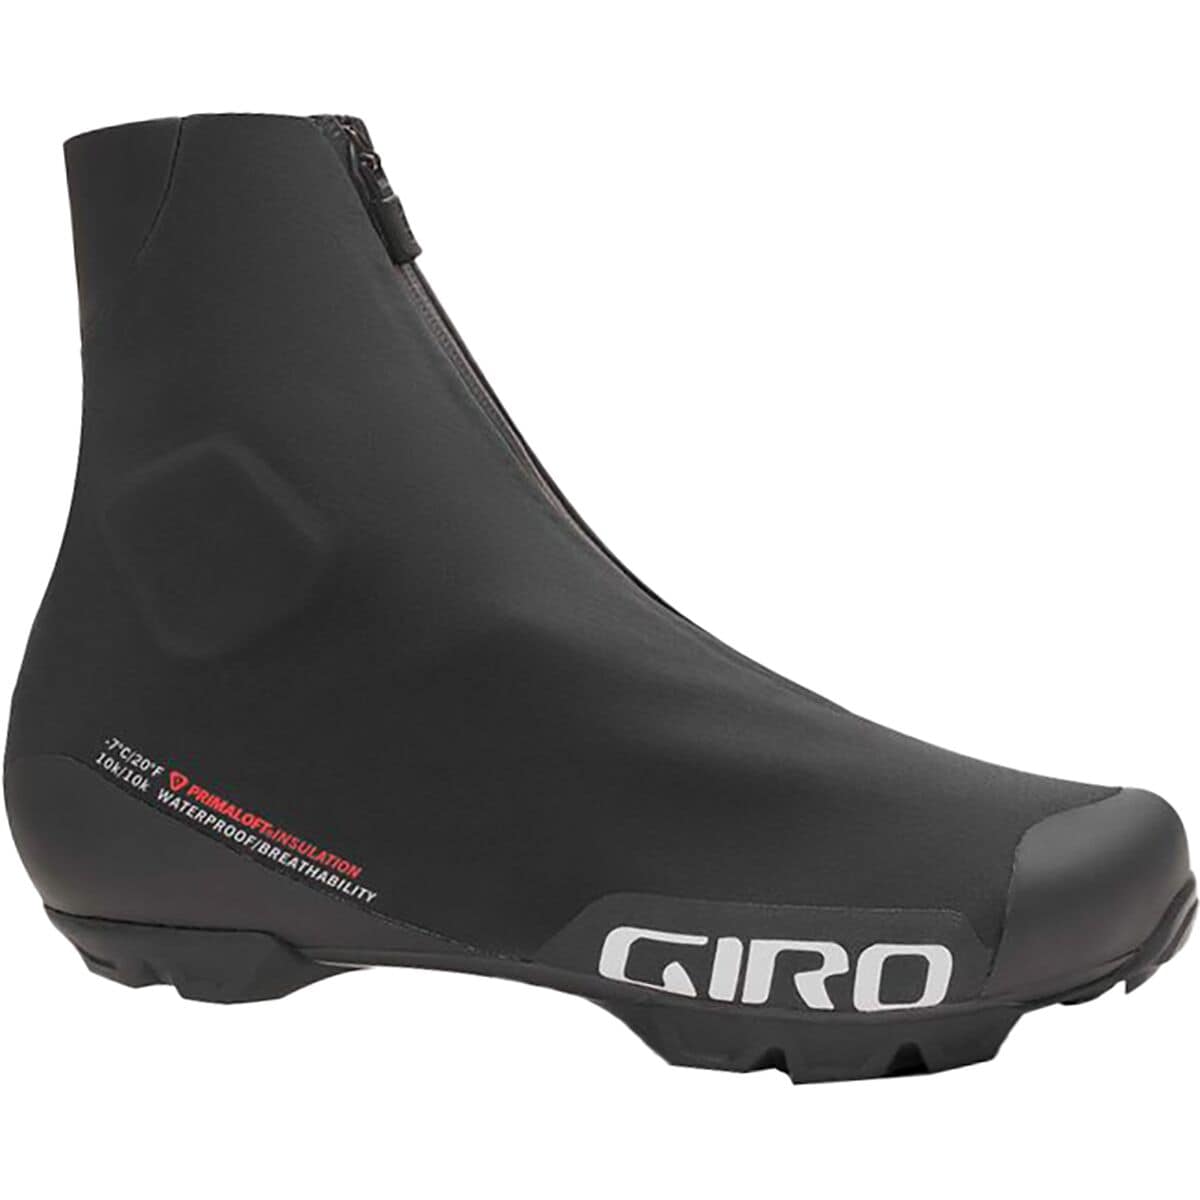 Giro Blaze Cycling Shoe - Men's Black, 43.0